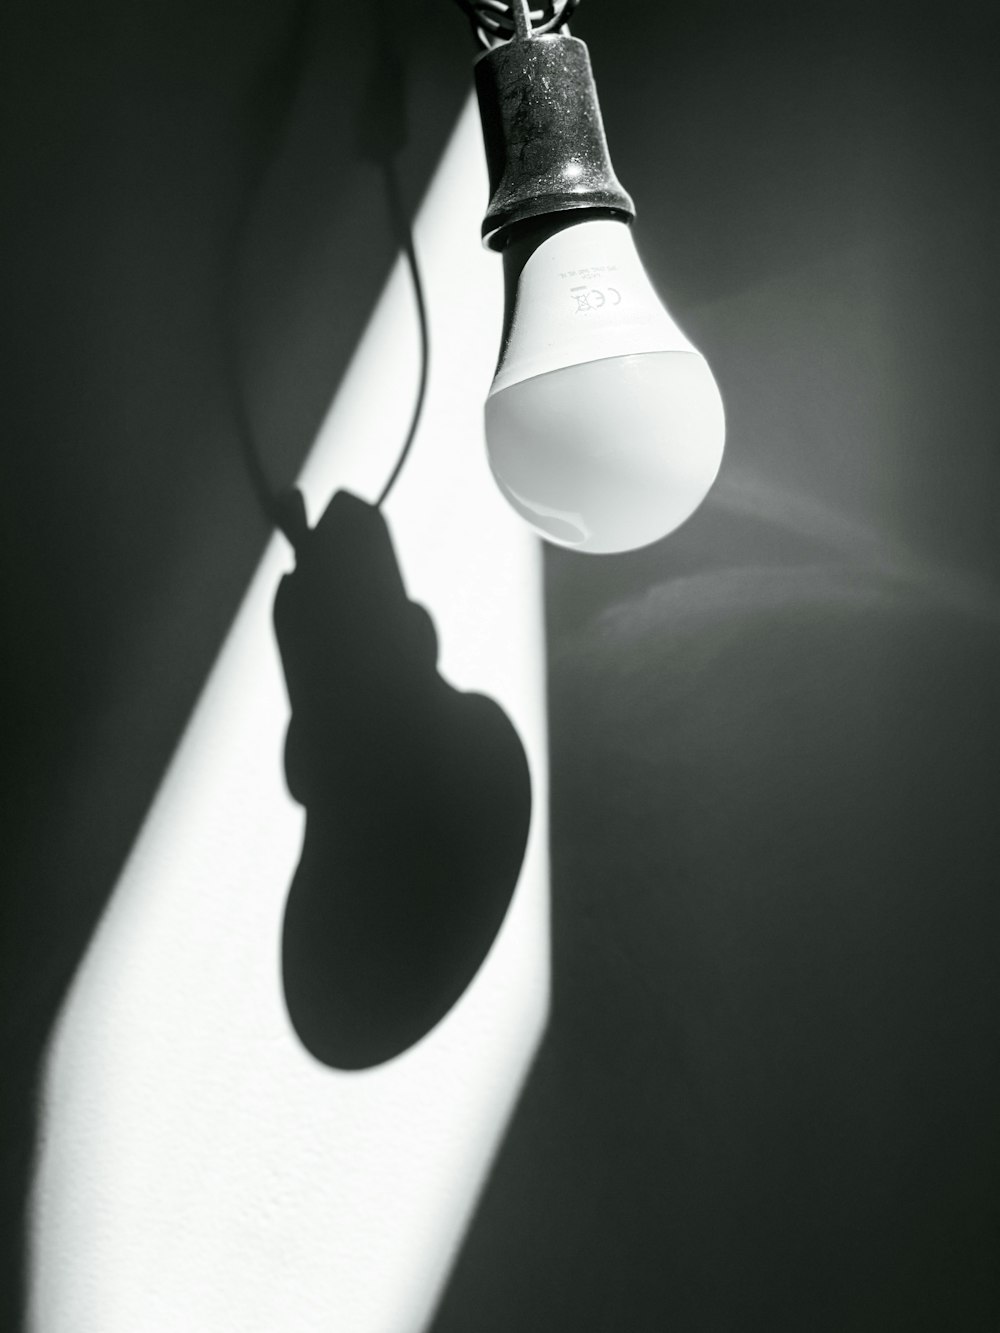 a light bulb casts a shadow on a wall